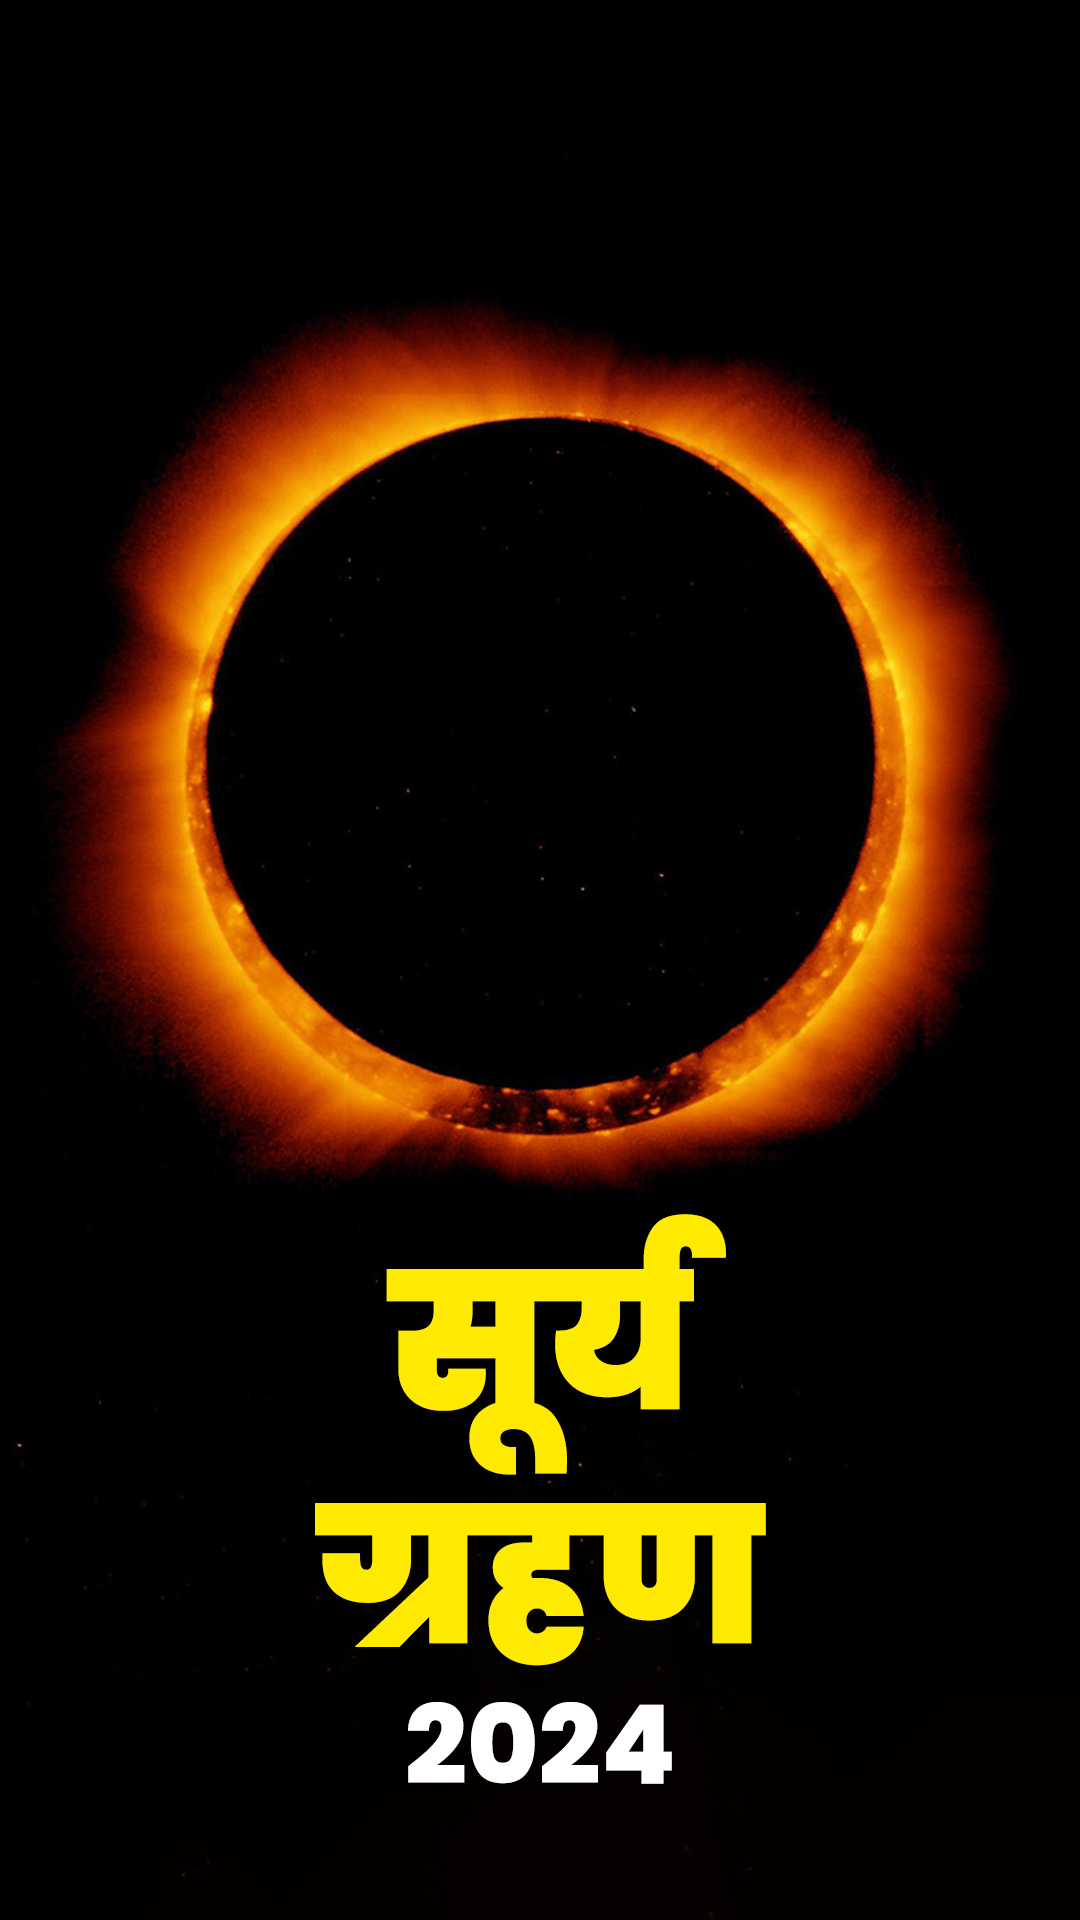 सूर्य ग्रहण भारत में है या नहीं, पाएं समय और सूतक की जानकारी 